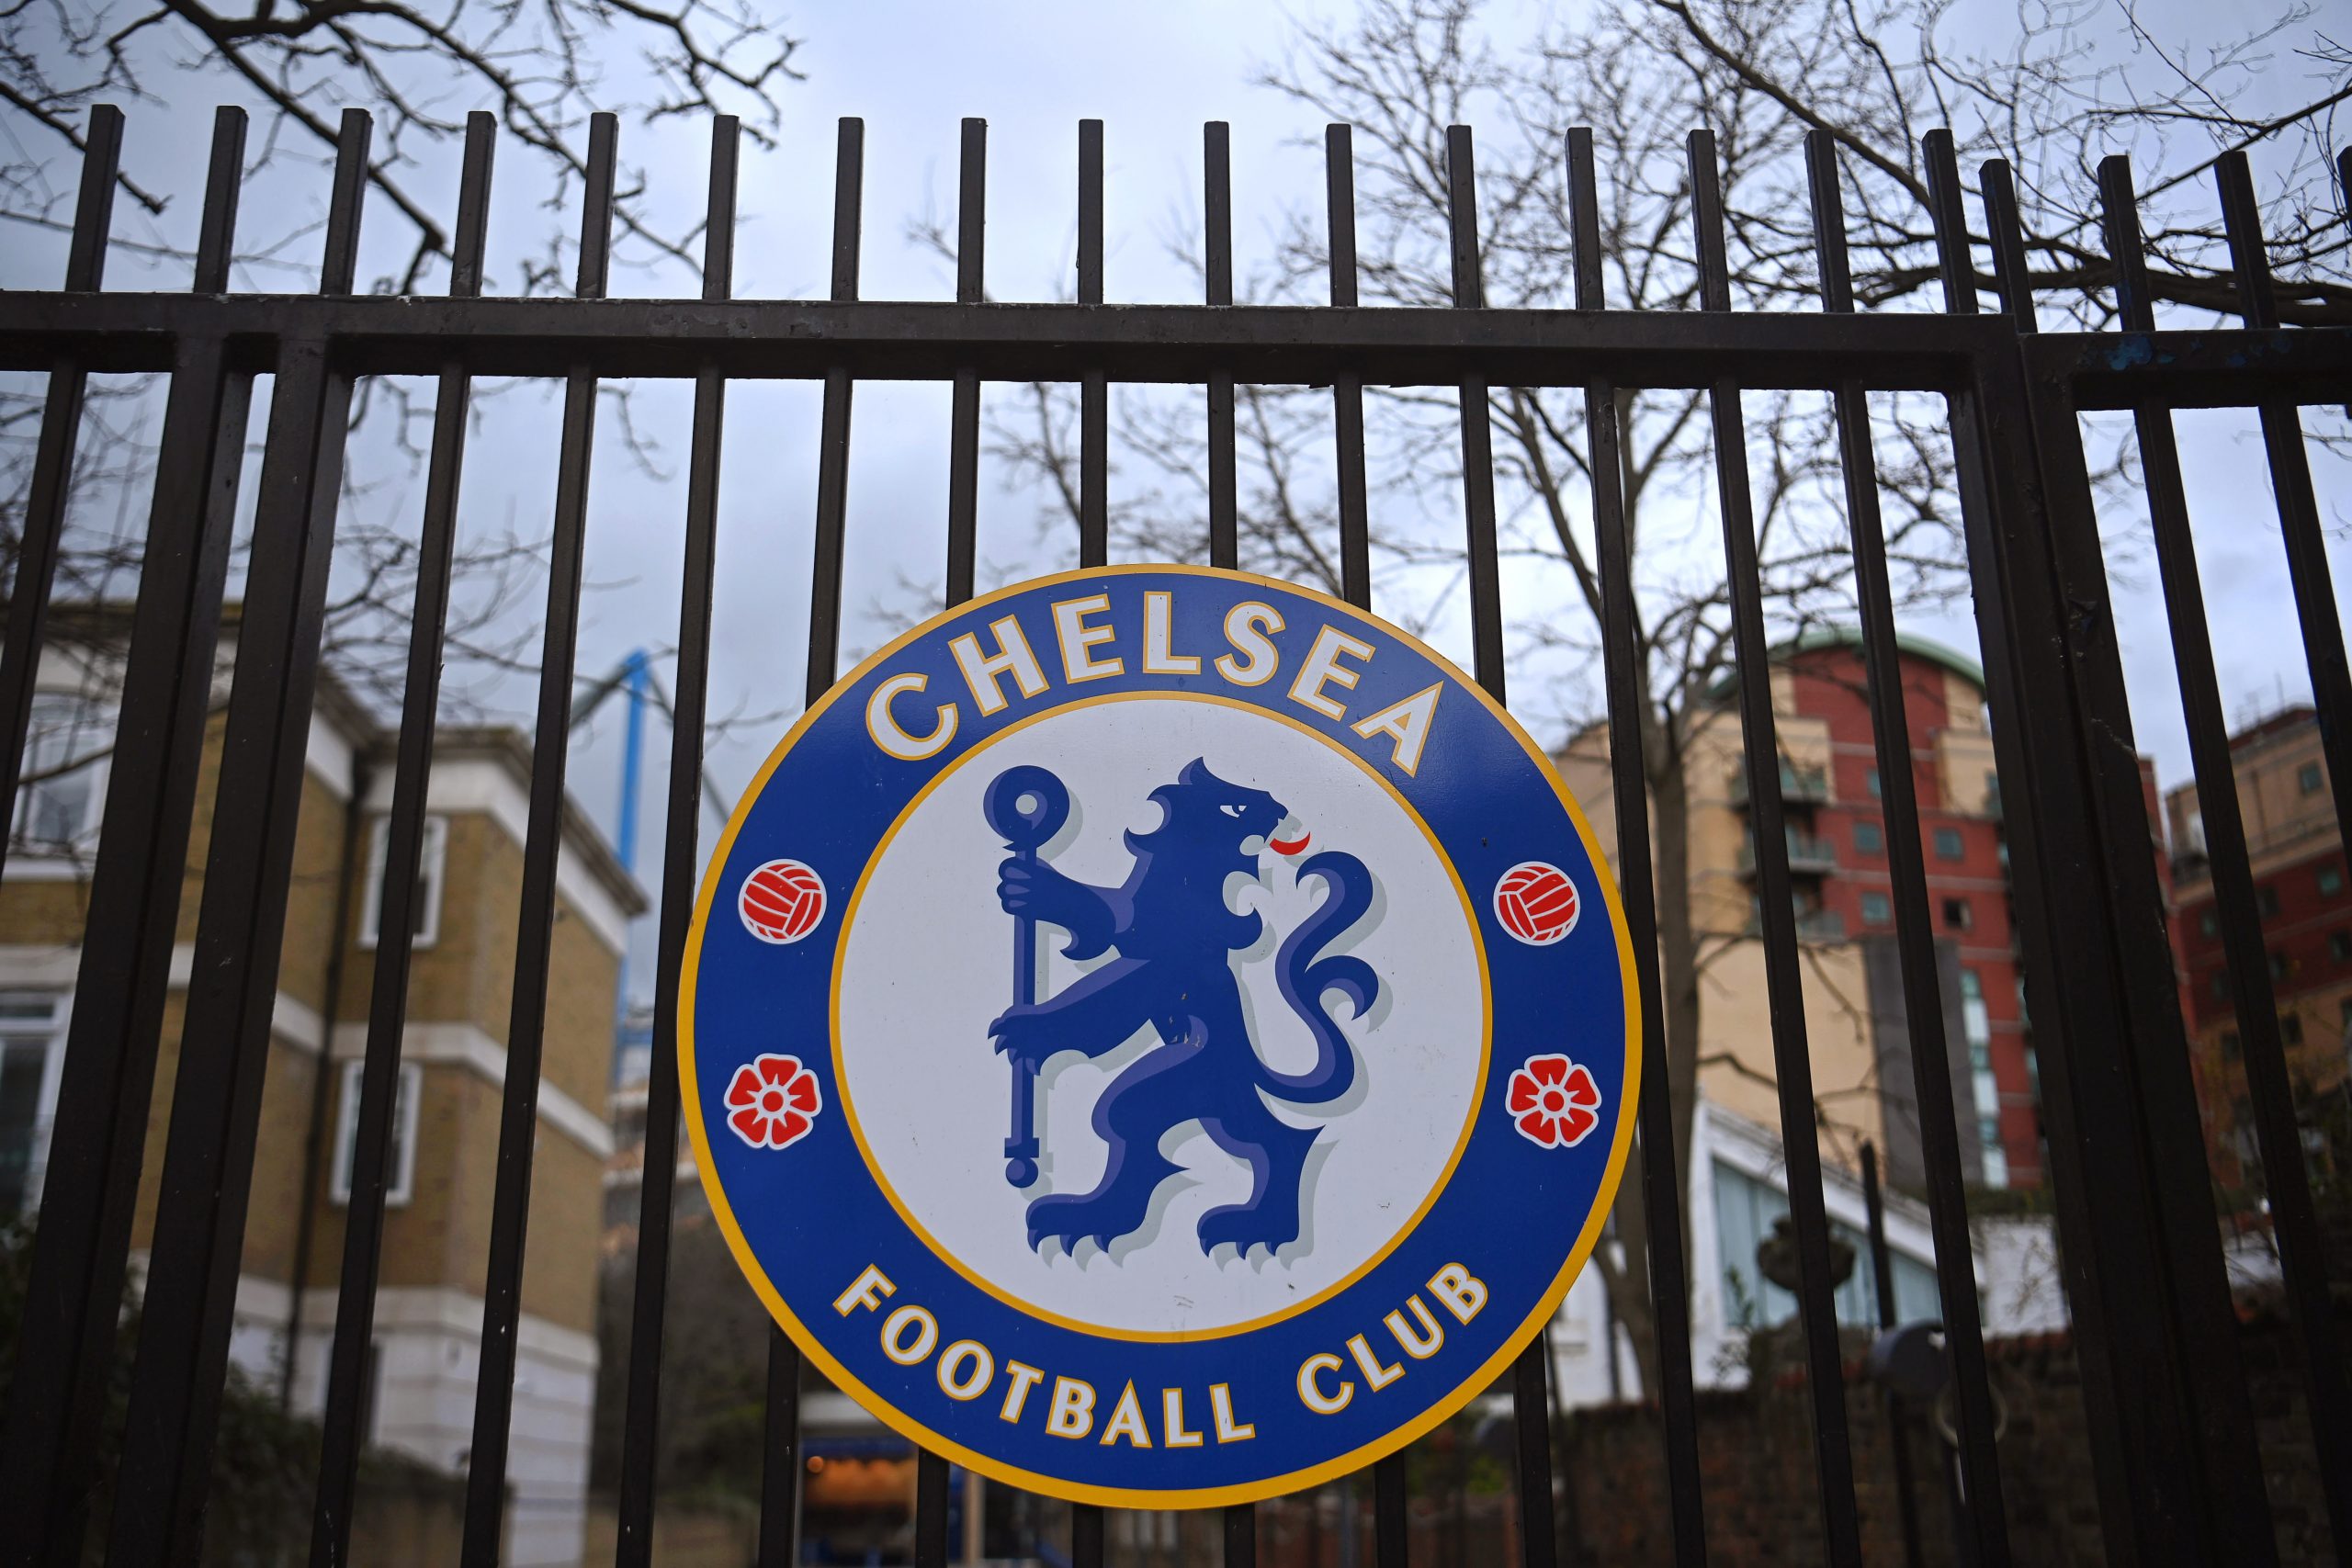 Chelsea Confirma Venta Y Espera Completar La Transacci N El Lunes